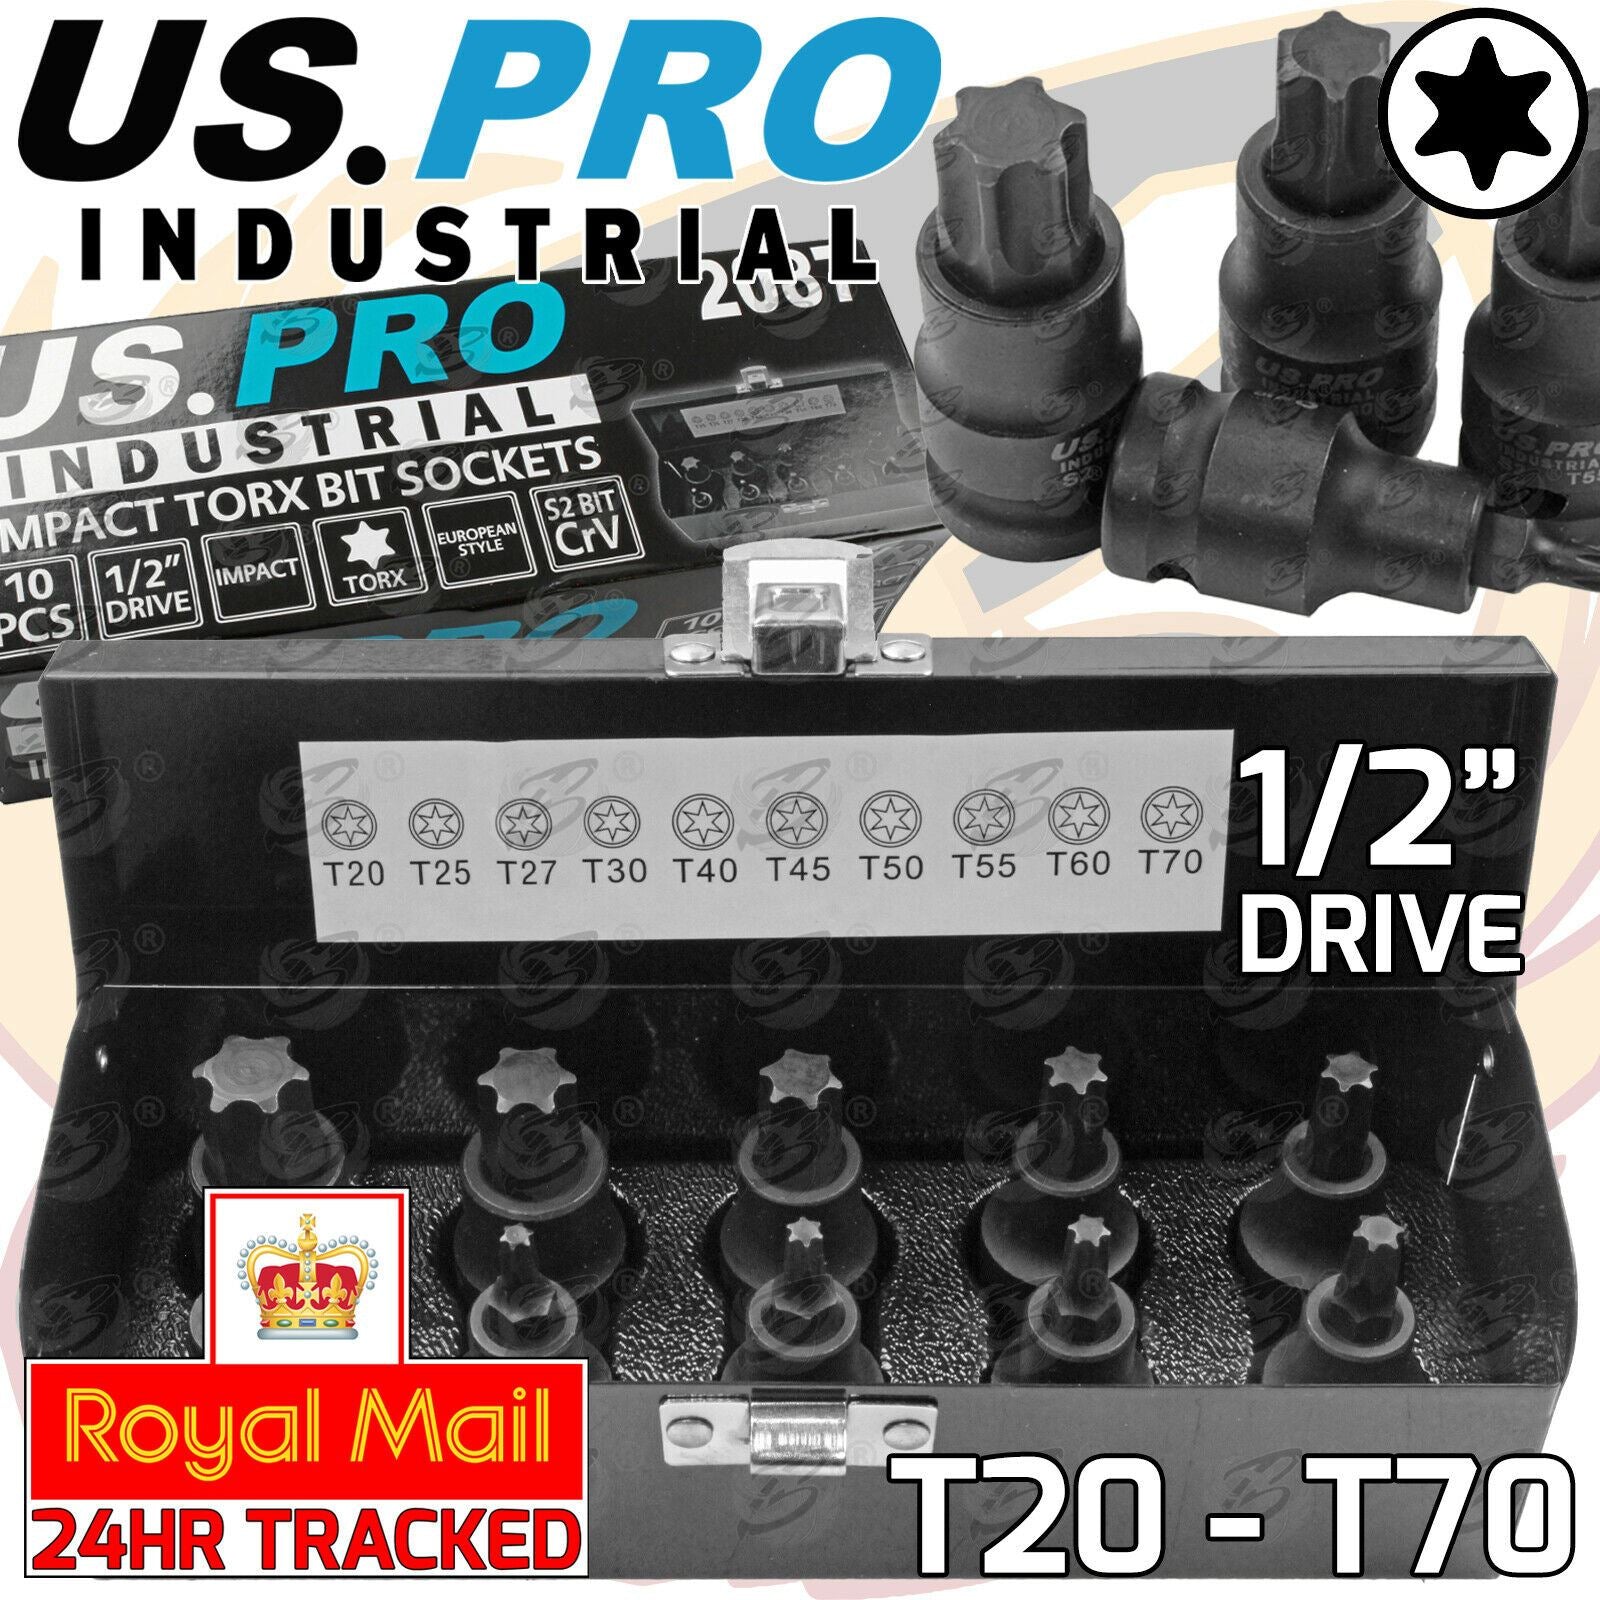 US PRO INDUSTRIAL 10PCS 1/2" DRIVE IMPACT TORX BIT SOCKETS T20 - T70